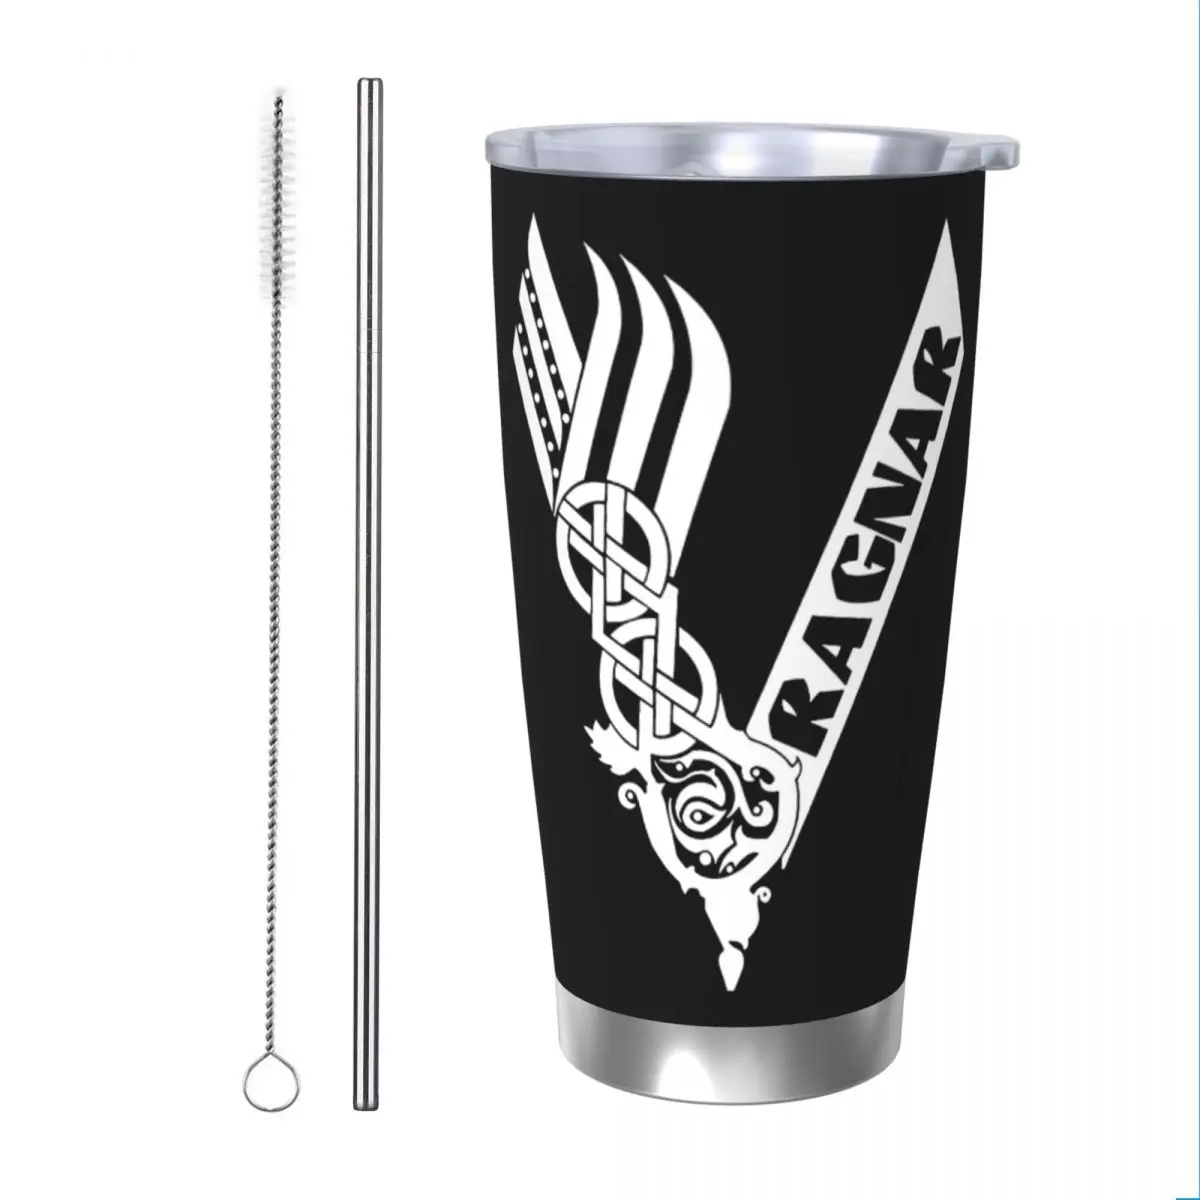 

Чашка с символами викингов Ragnar, вакуумные изолированные кофейные чашки, вакуумная фляжка, бутылка для воды кружки с двойными стенками